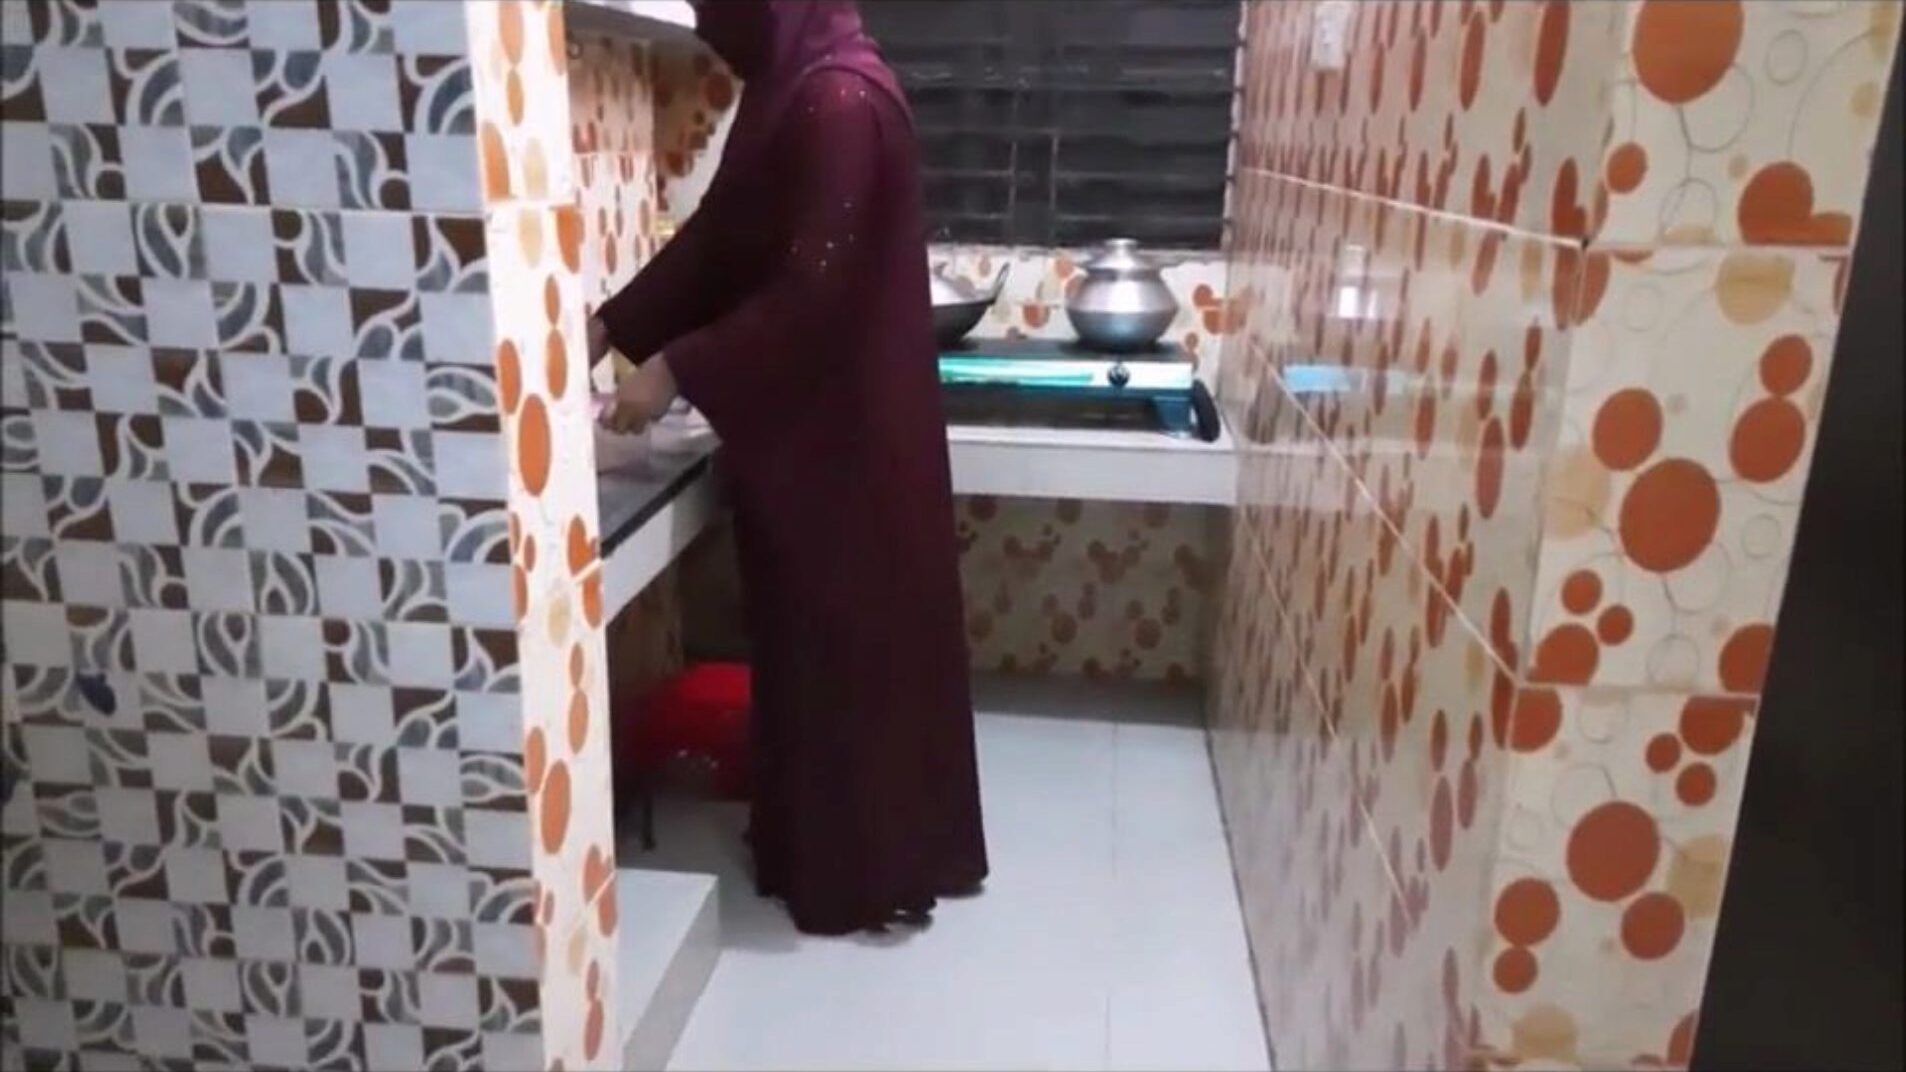 muslimi sisar laissa keittiö vittu veli lain kanssa katsella muslimi sisar laki keittiö vittu kanssa veli p-1 elokuva xhamsterissä - perimmäinen valinta ilmaisista arabialaisista intialaisista hd-pornografiaputkisarjoista